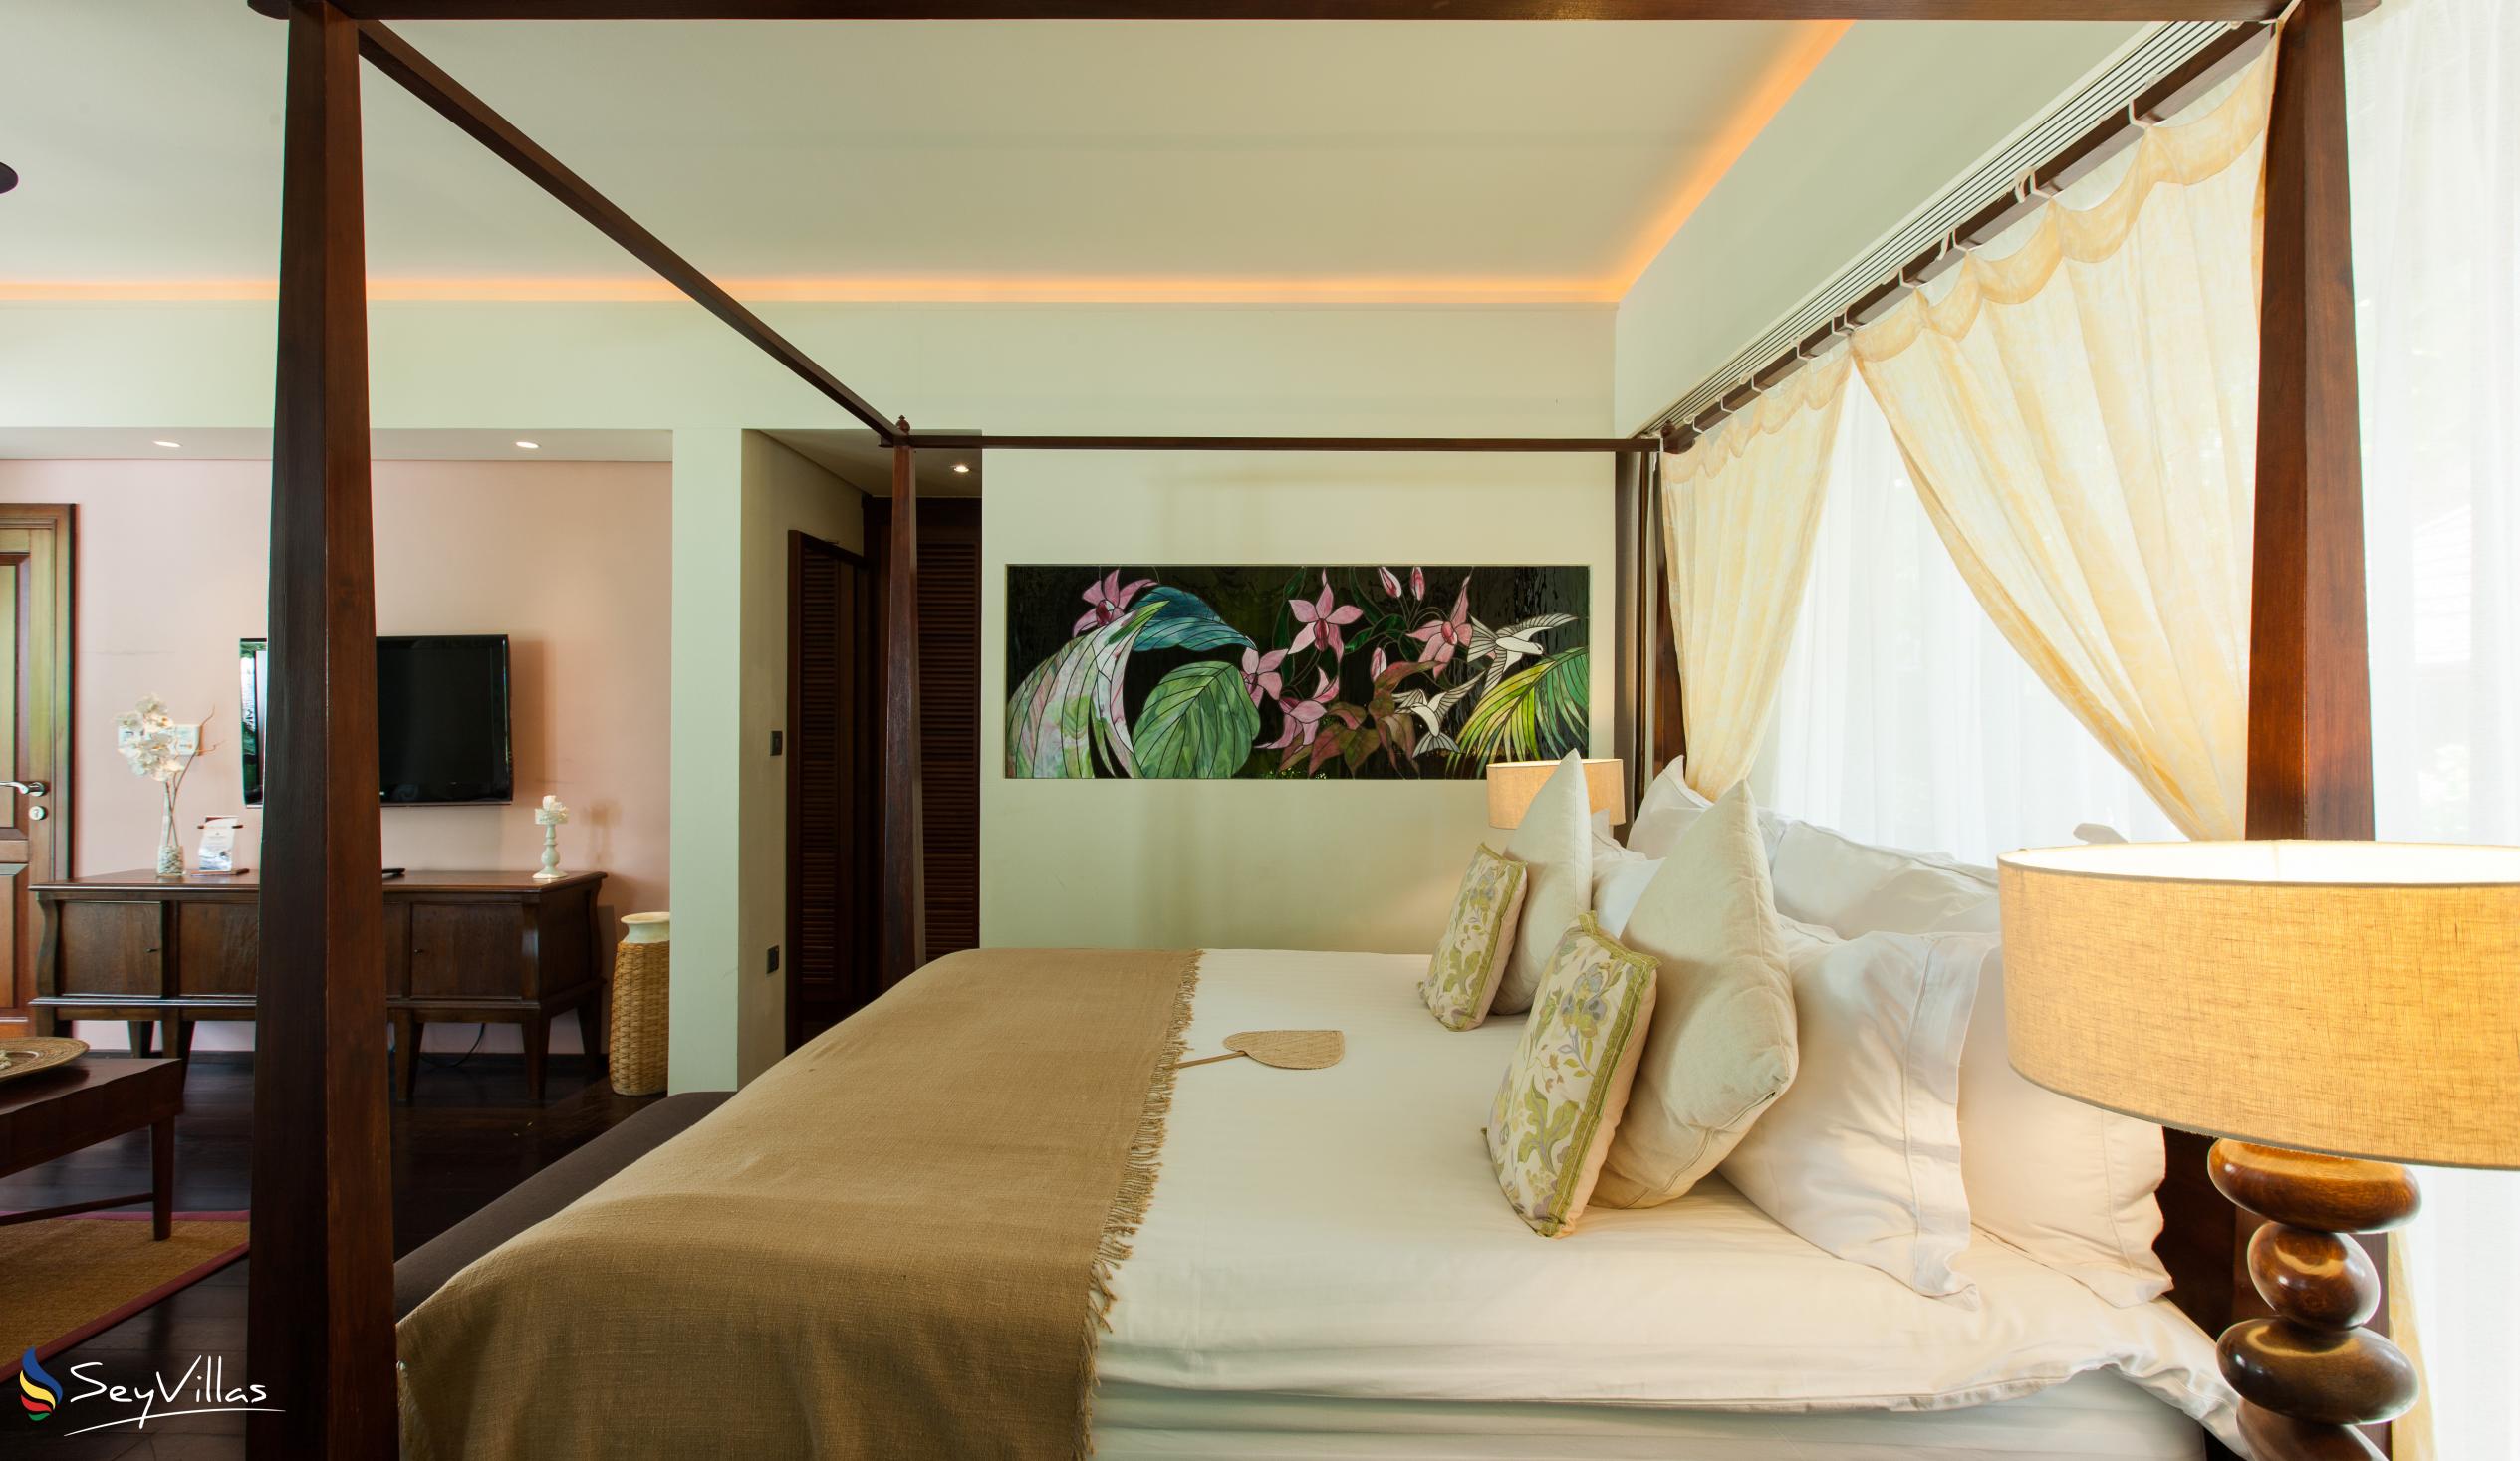 Foto 54: Dhevatara Beach Hotel - Front-Suite mit Ozeanblick - Praslin (Seychellen)